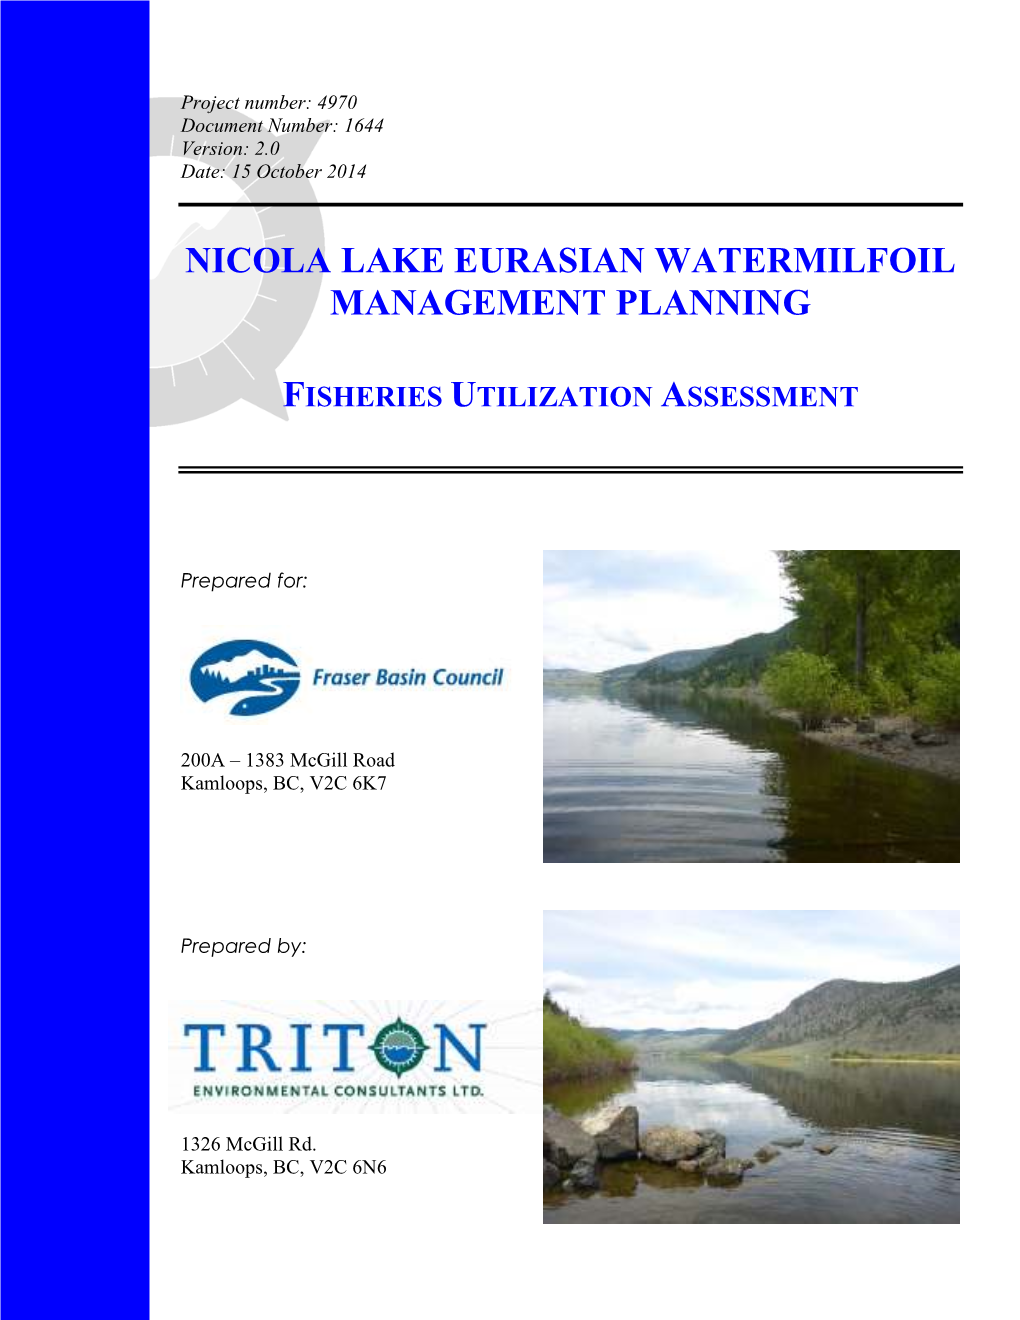 Nicola Lake Eurasian Watermilfoil Management Planning Fisheries